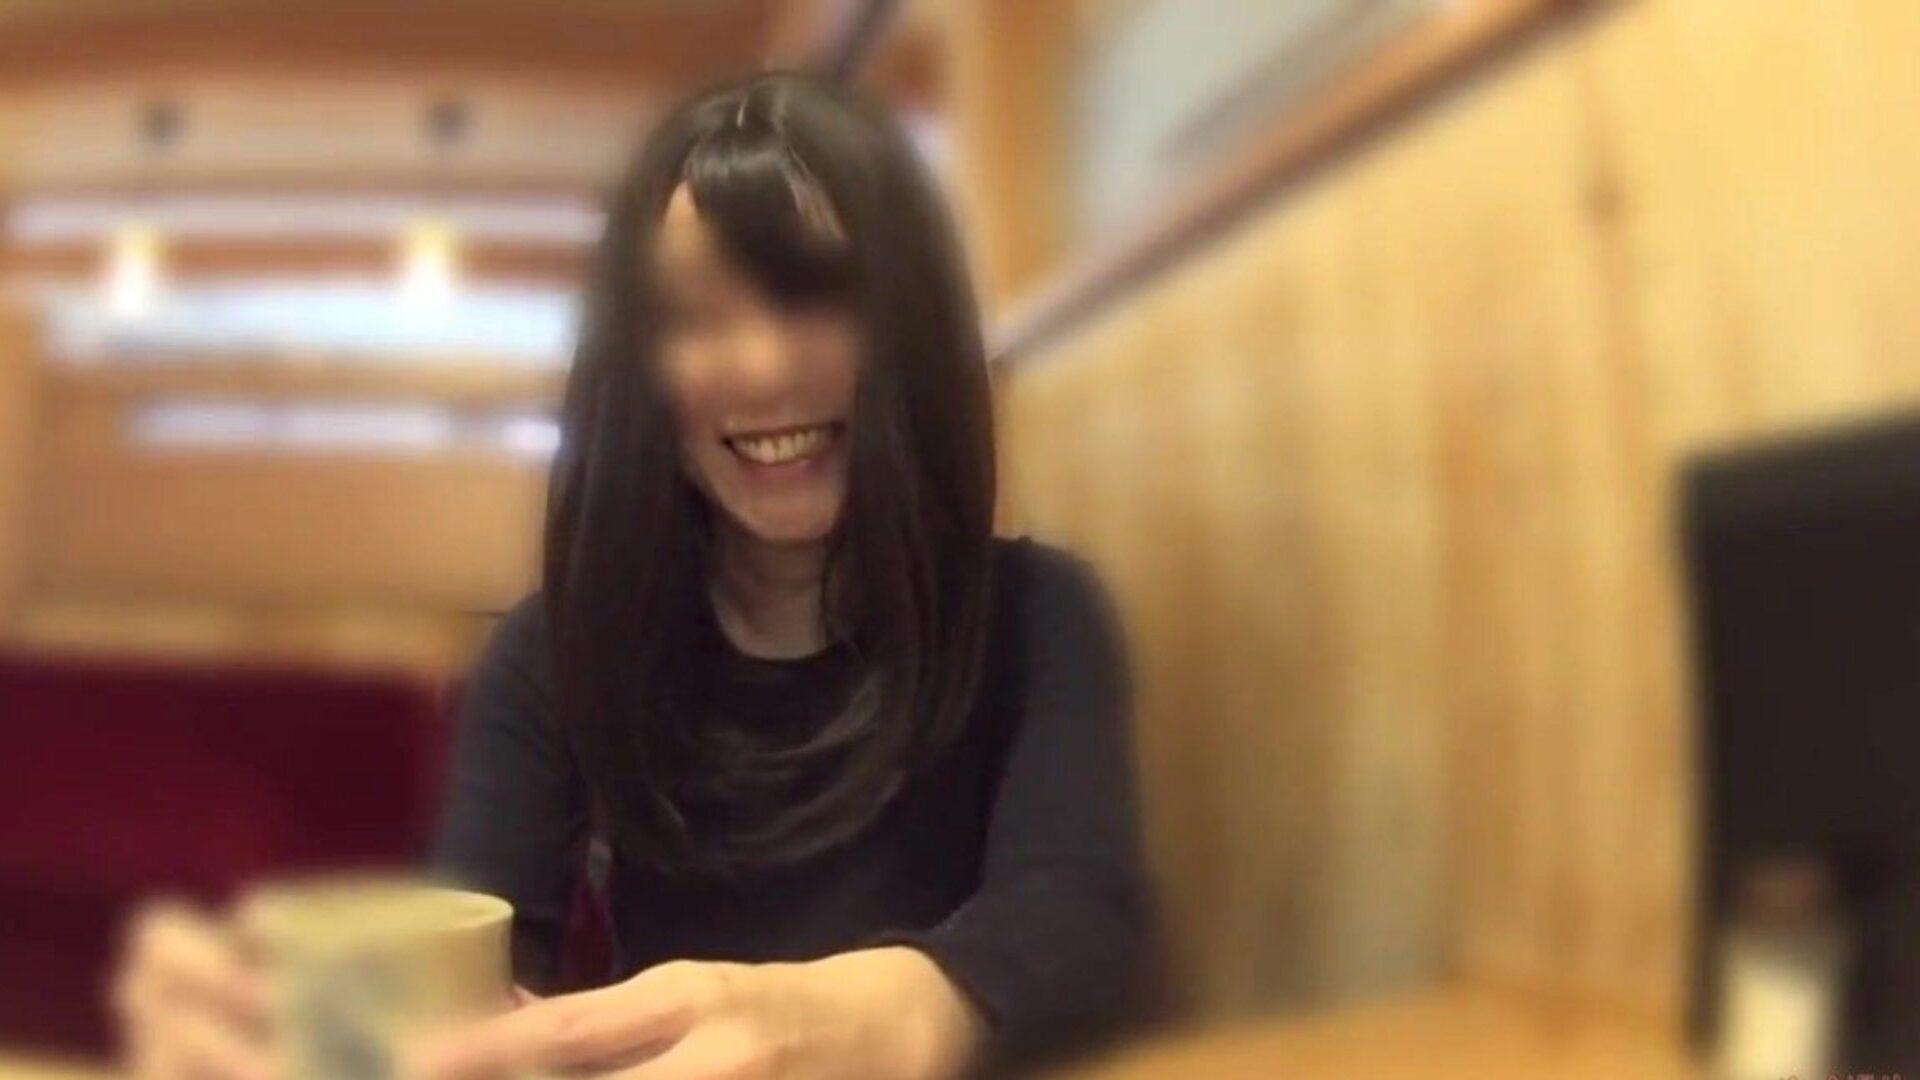 אשת קרנן הורידה את תחתוניה בבית הקפה: פורנו בחינם 60 צפה אשת קרנן הורידה את תחתוניה בבית הקפה סרט על xhamster - המירב האולטימטיבי של יפני אסייתי יפני hd xxx חינם